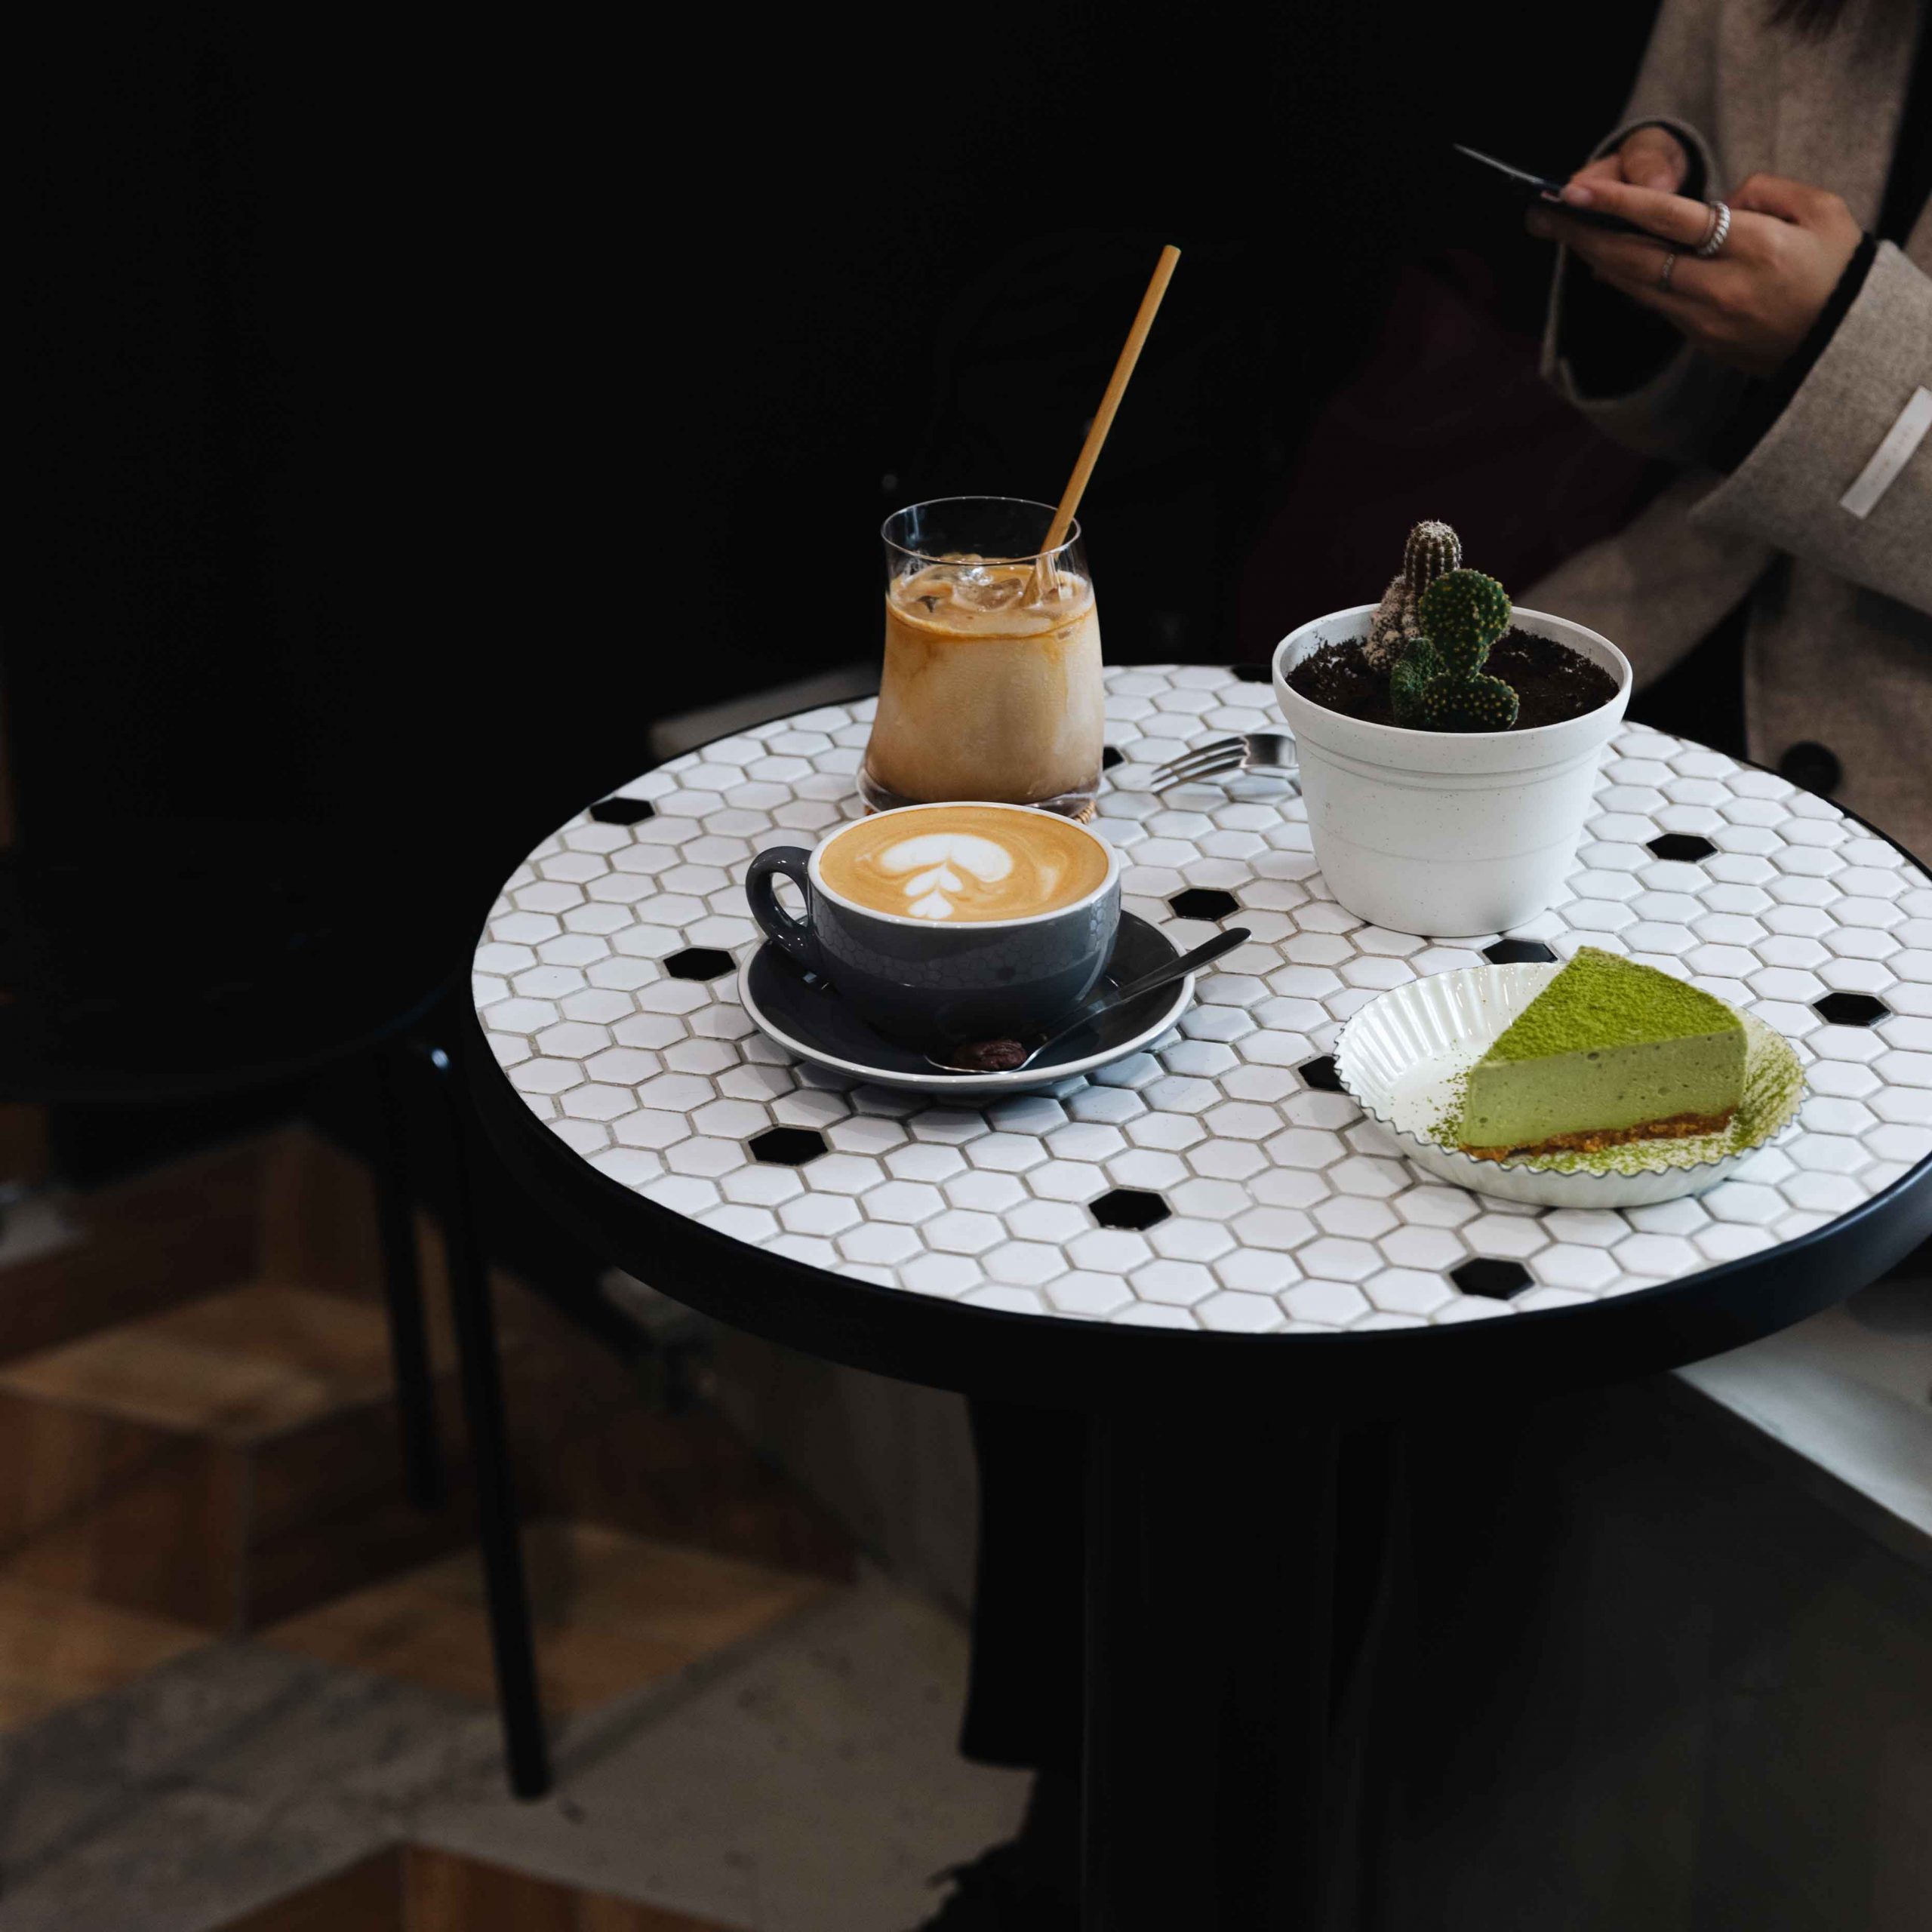 新竹美食-FOX.CONE COFFEE & BAKES，澳式咖啡、手作司康、甜點專賣新竹咖啡廳 。